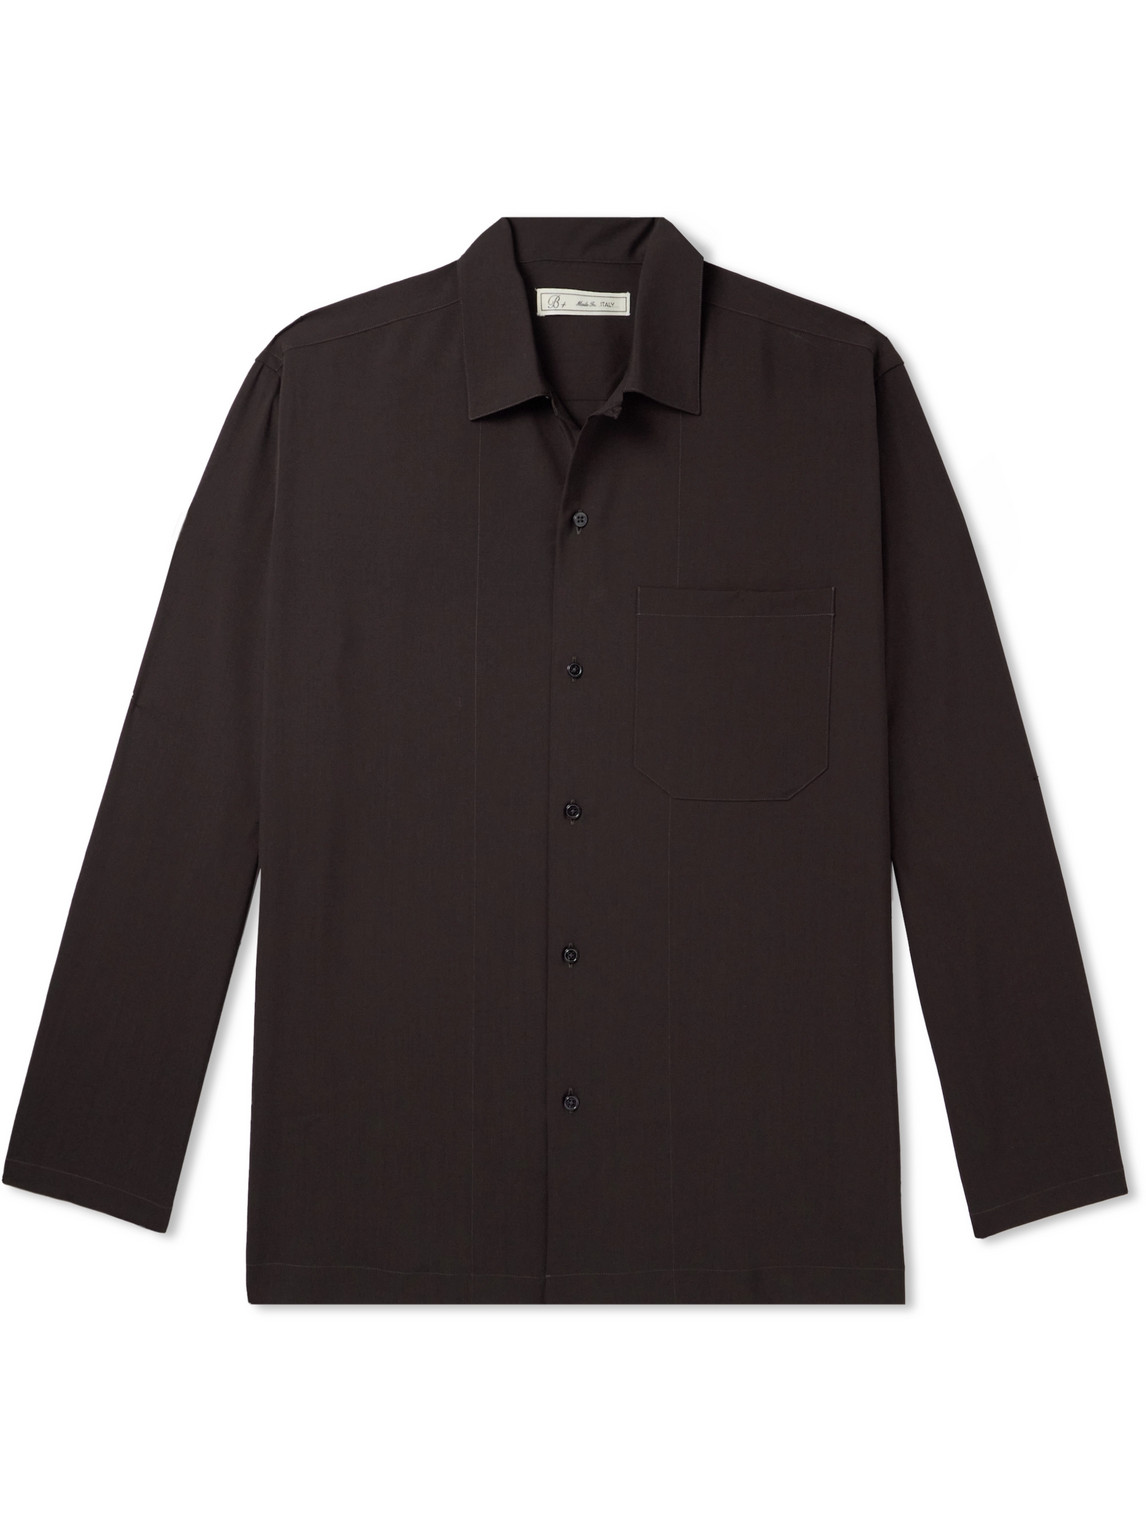 UMIT BENAN B - Convertible-Collar Virgin Wool Shirt - Men - Brown - IT 46 von UMIT BENAN B+